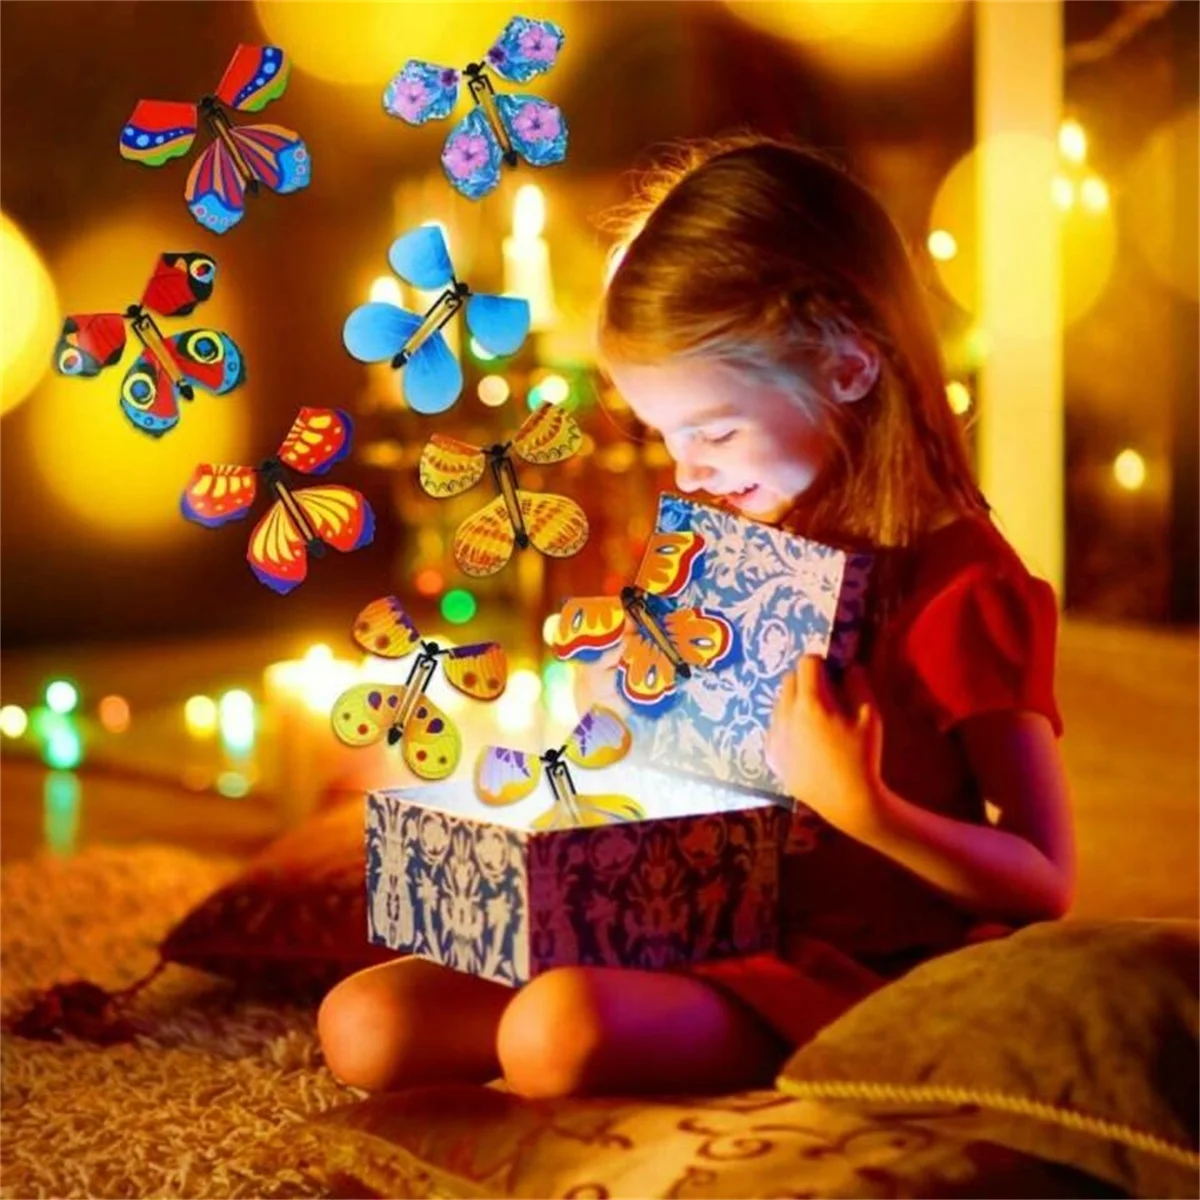 5 шт. Волшебная Летающая бабочка взрывобезопасная коробка игрушка-сюрприз с